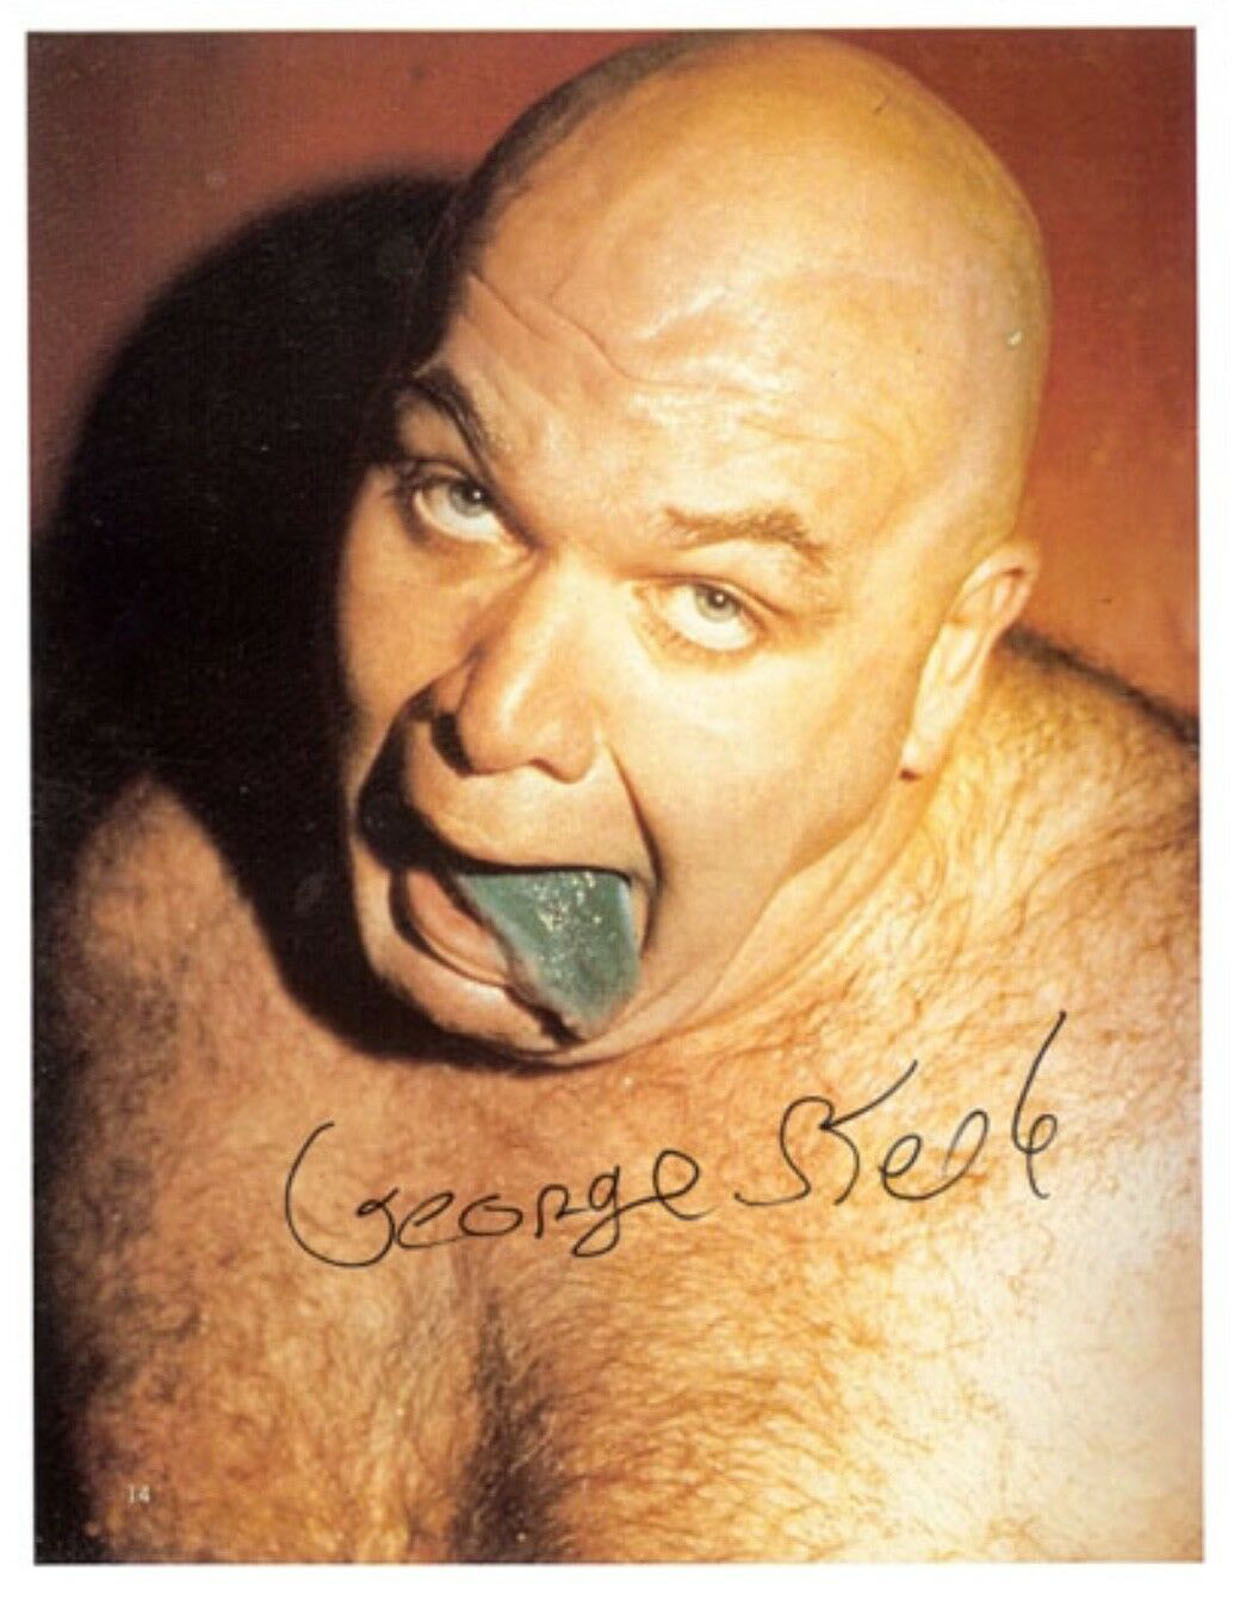 George 'The Animal' Steele